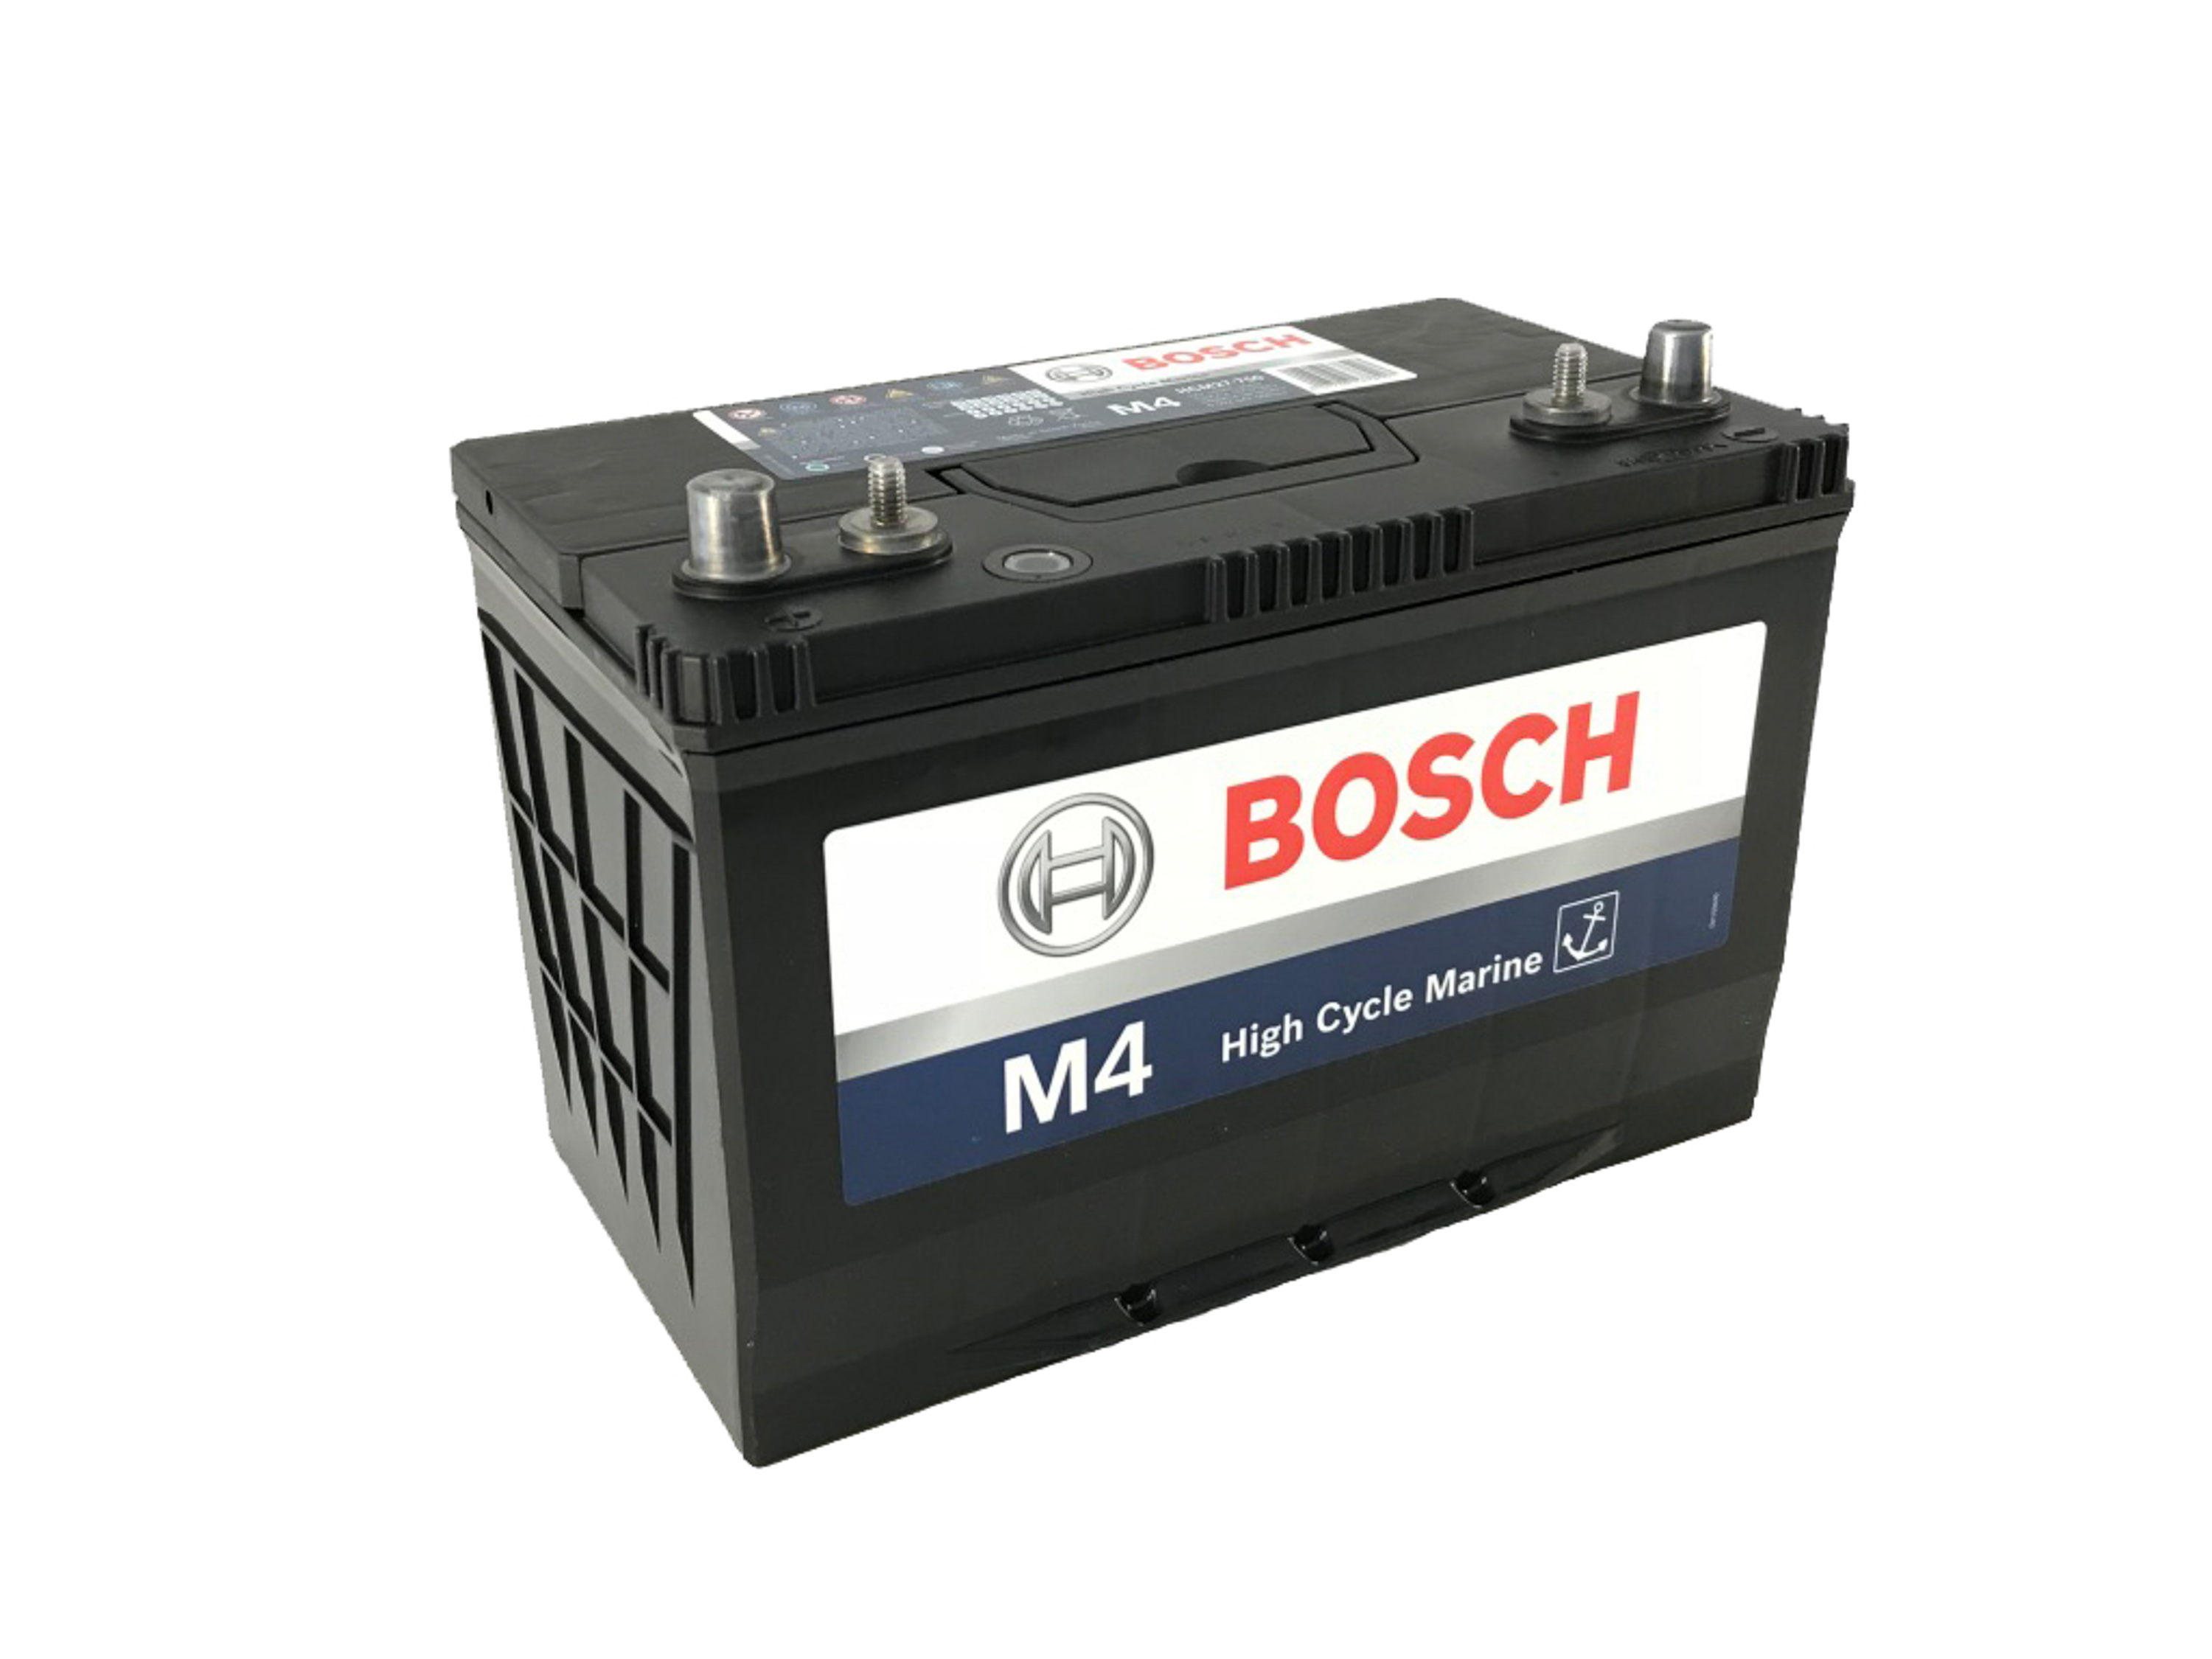 HCM27750-M4, Passenger Starting Batteries